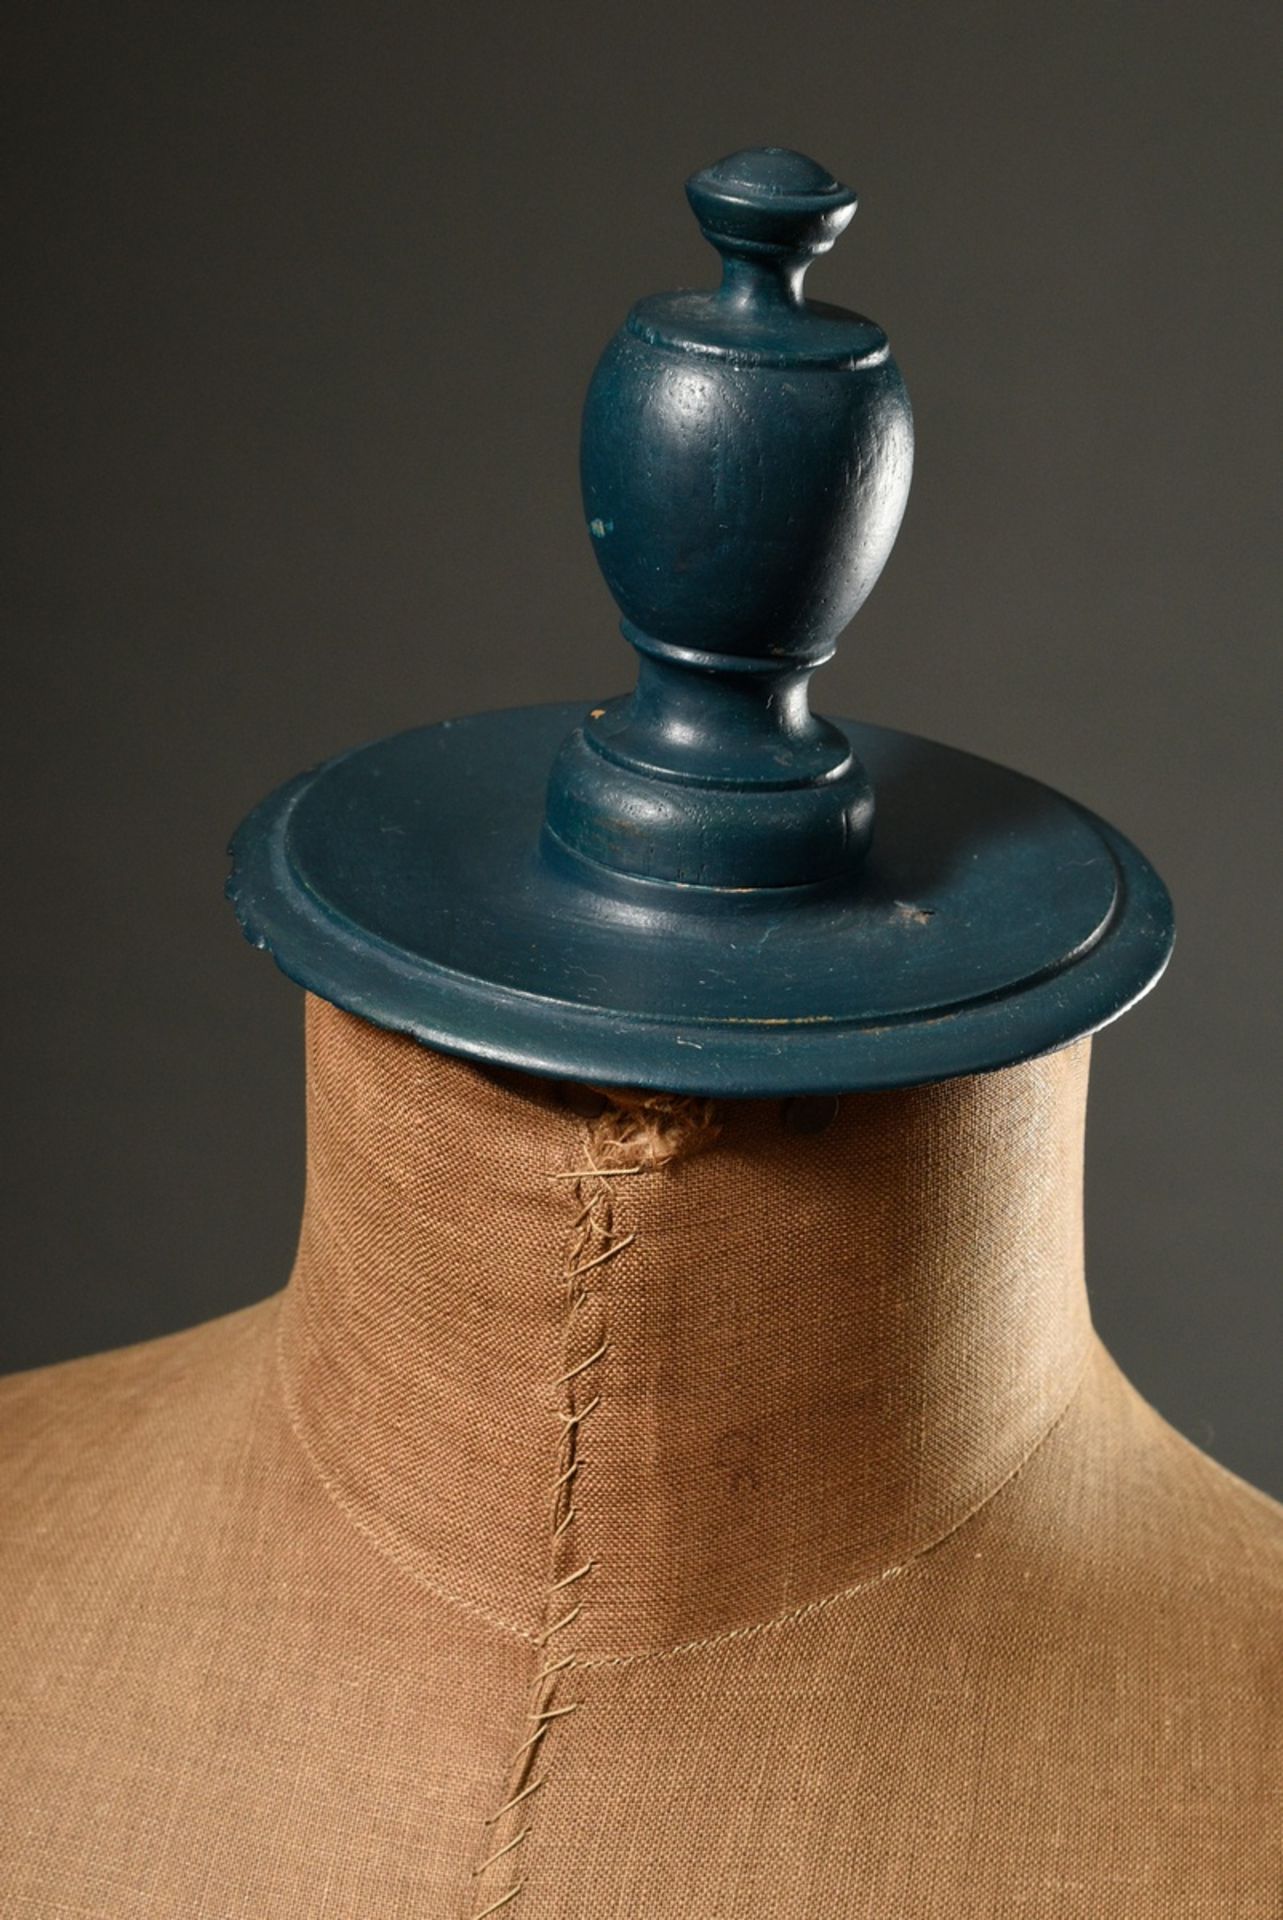 Verstellbare Schneiderpuppe mit Leinen bezogener Büste auf gedrechseltem Fuß, petrolfarben gefasst, - Bild 3 aus 7